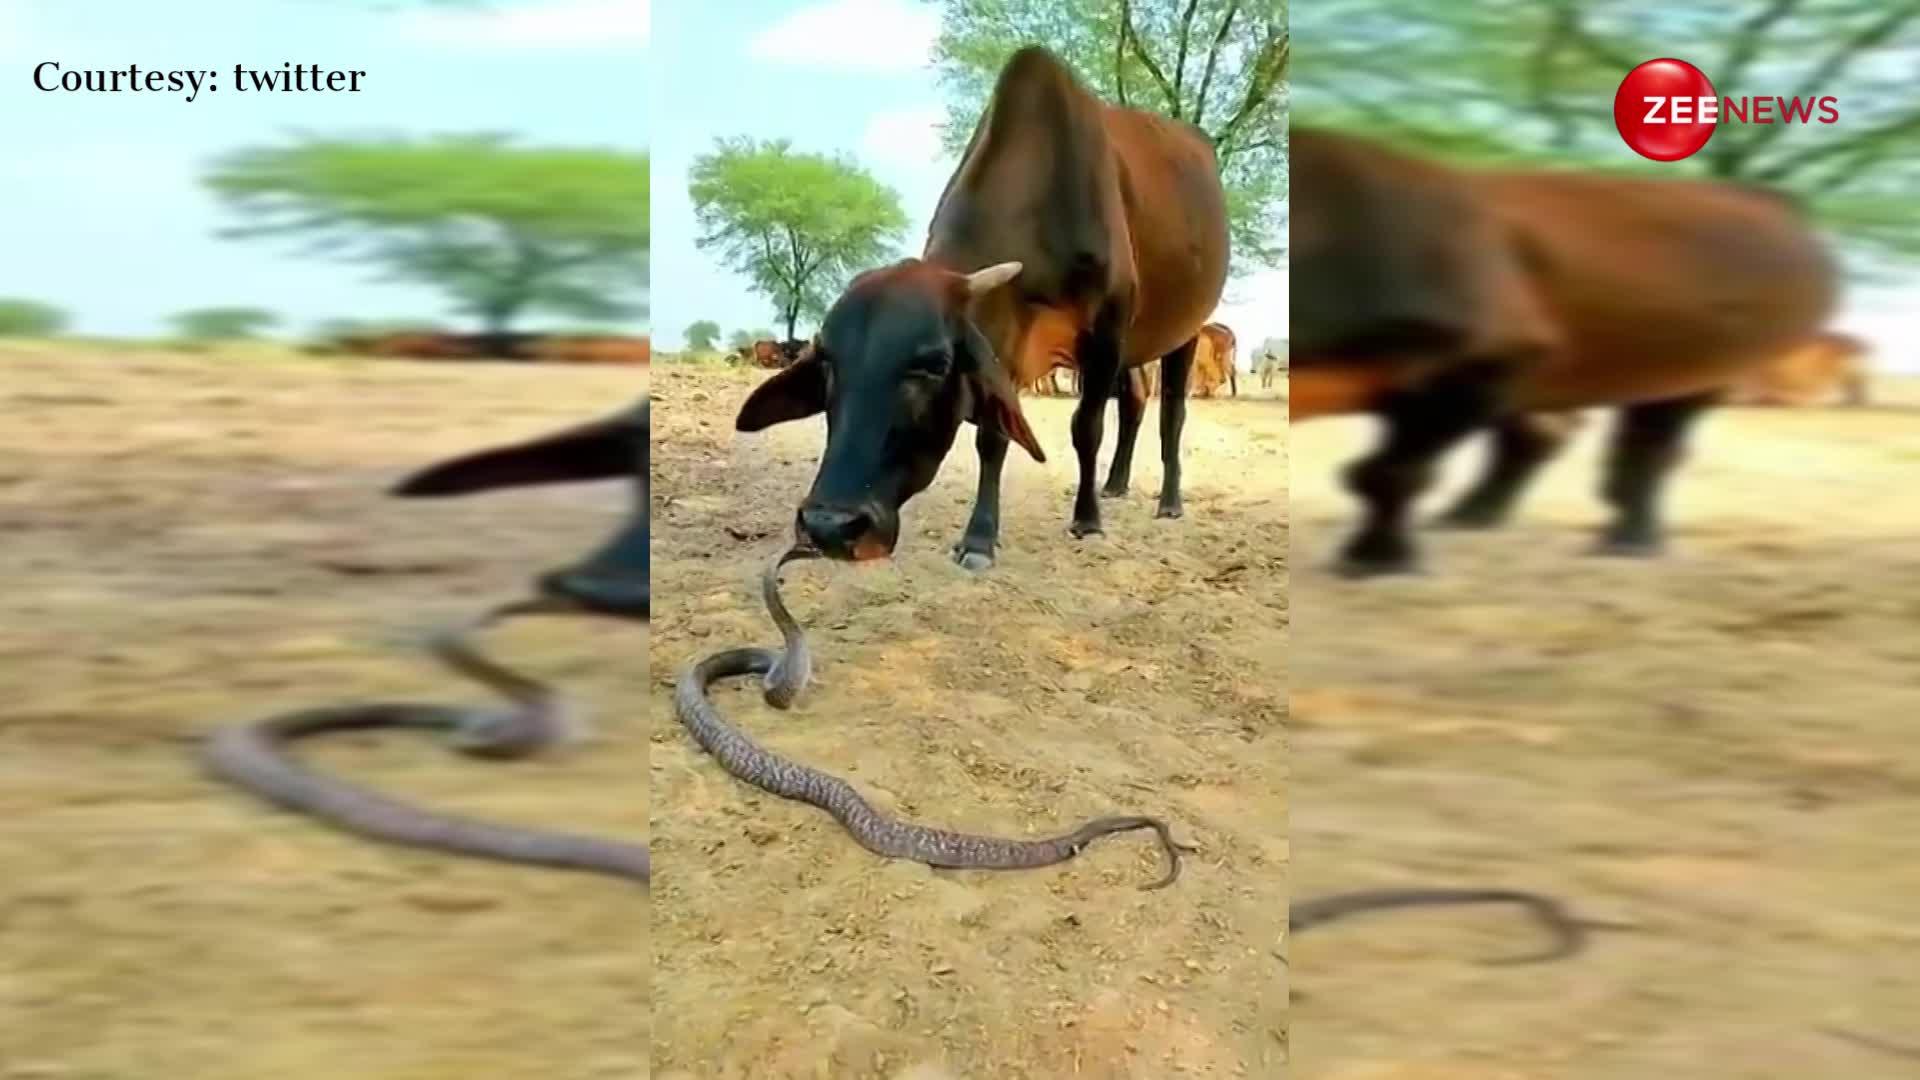 वाह! गजब की है गाय और सांप की दोस्ती, वीडियो देख हक्के-बक्के रह गए यूजर्स